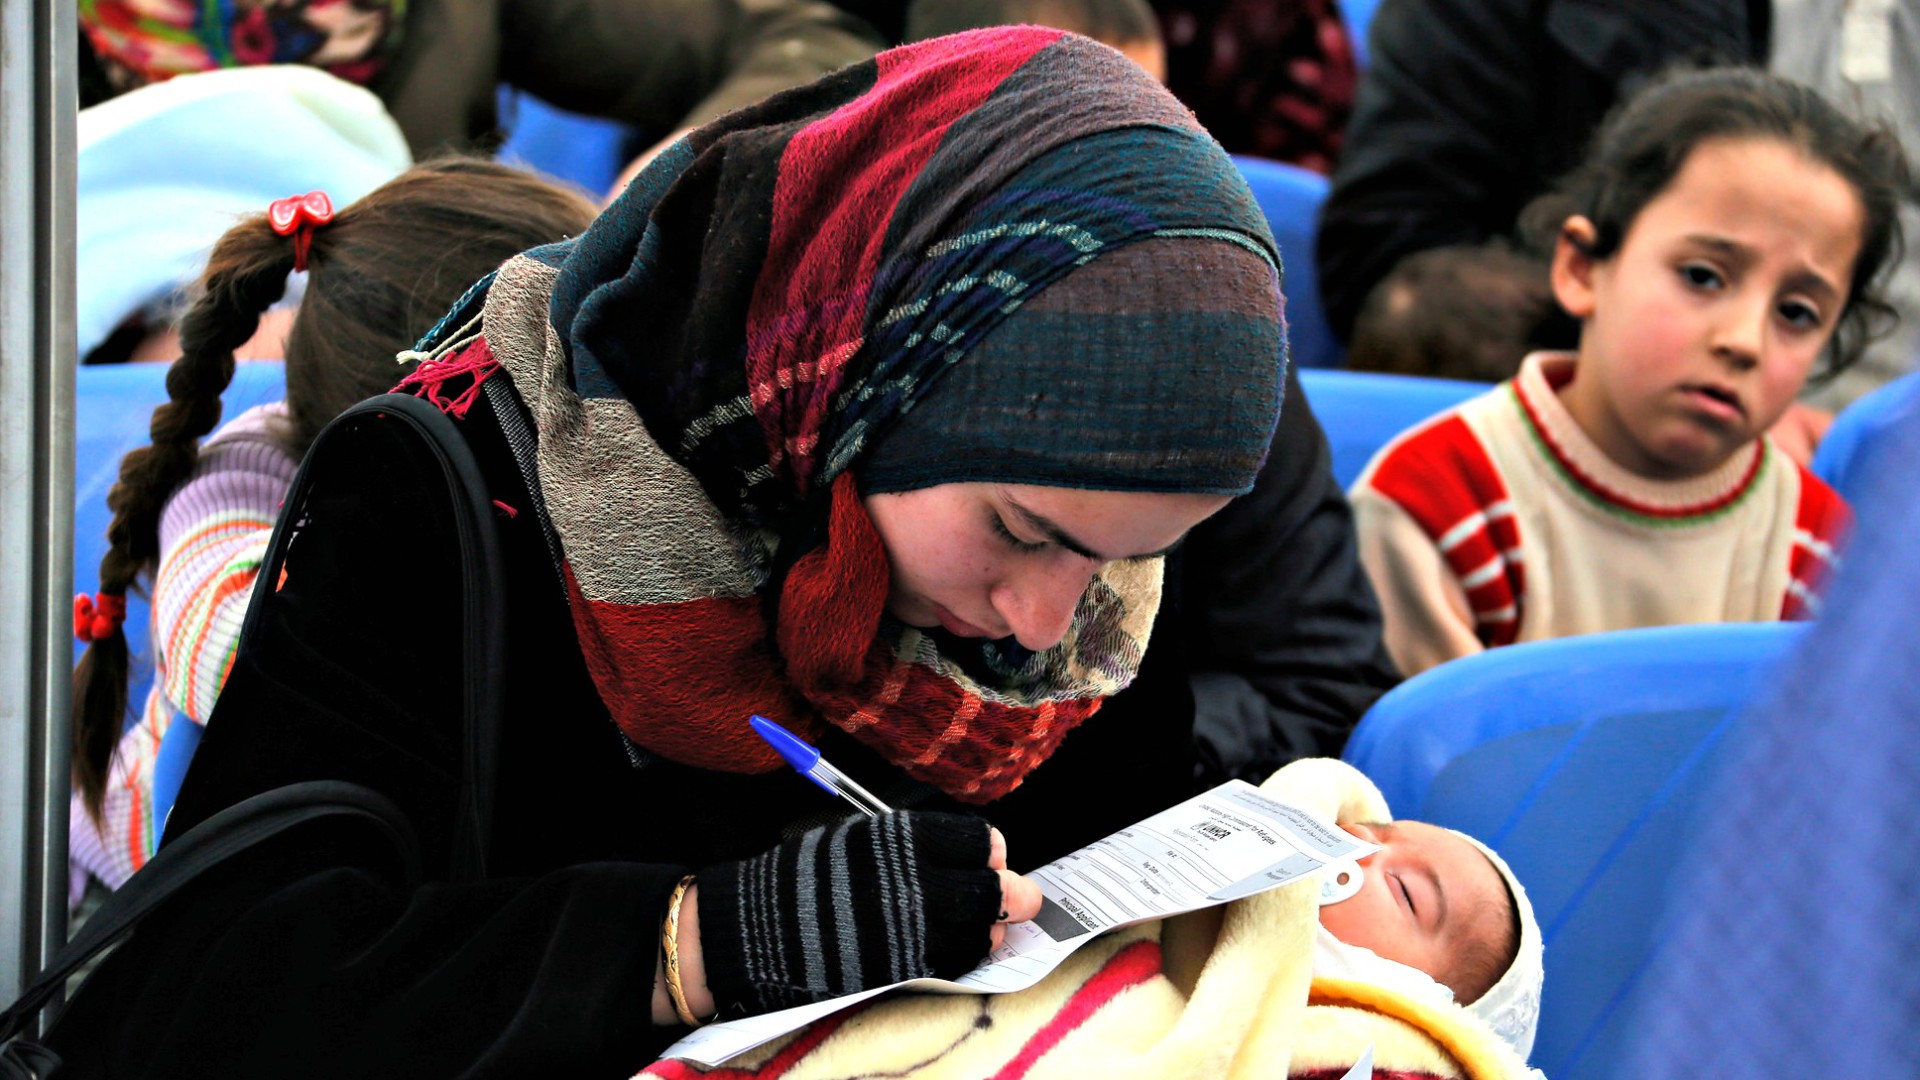 Les réfugiés musulmans auront-ils leur aumônerie? (Photo d'illustration: World Bank/Flickr/CC BY-NC-ND 2.0)